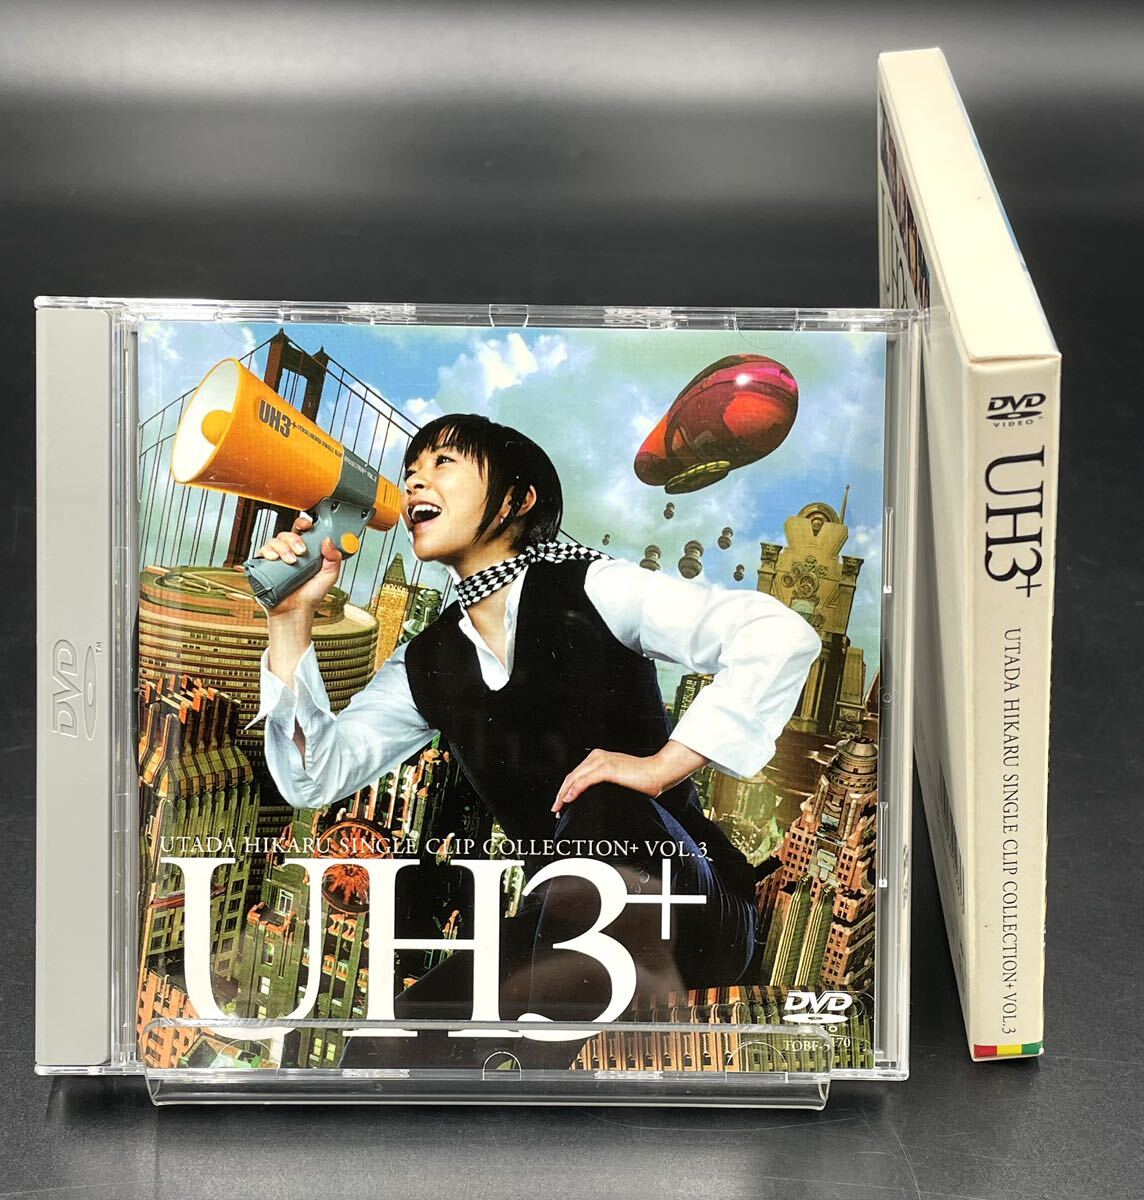 D. 宇多田ヒカル / SINGLE CLIP COLLECTION Vol.1 ・Vol.3 DVD 2枚まとめて [動作未確認] UH 1 ・UH 3+ シングル クリップ コレクション_画像6